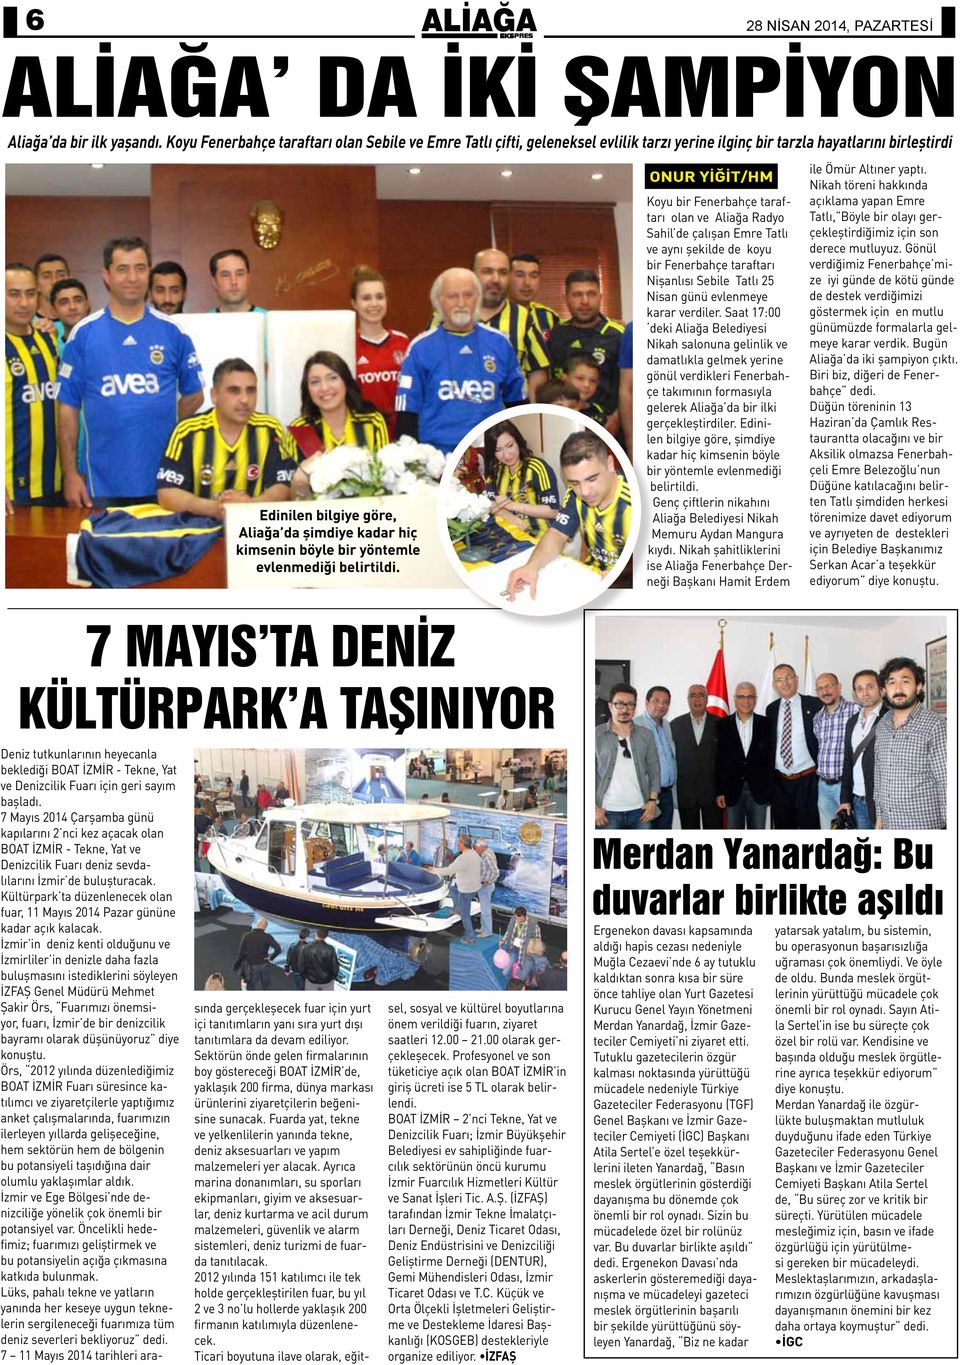 çalışan Emre Tatlı ve aynı şekilde de koyu bir Fenerbahçe taraftarı Nişanlısı Sebile Tatlı 25 Nisan günü evlenmeye karar verdiler.